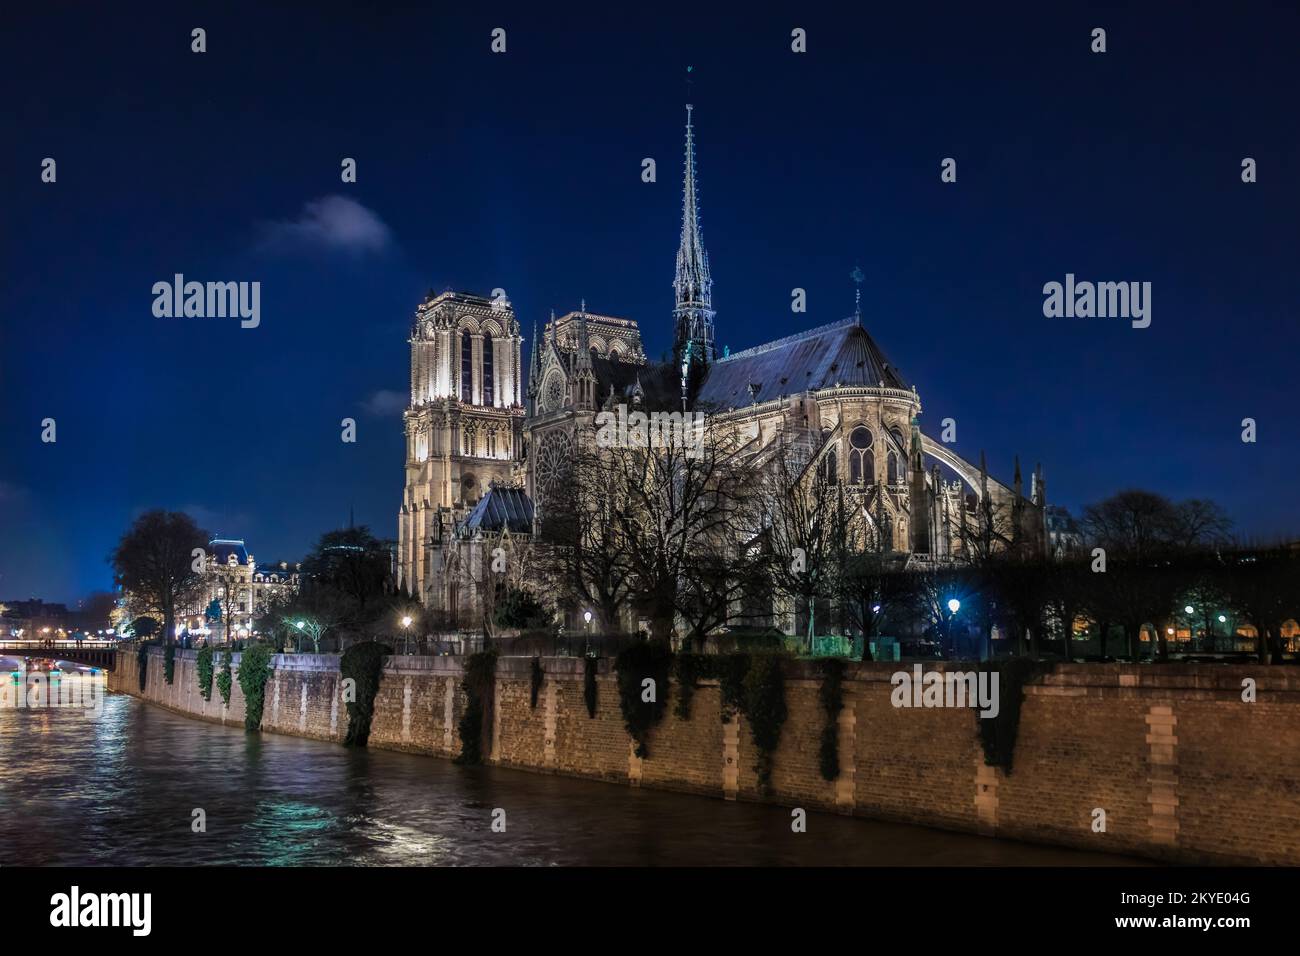 La cathédrale notre-Dame de Paris illuminée avec la flèche, avant le feu la nuit, la plus célèbre cathédrale catholique gothique du monde à Paris, en France Banque D'Images